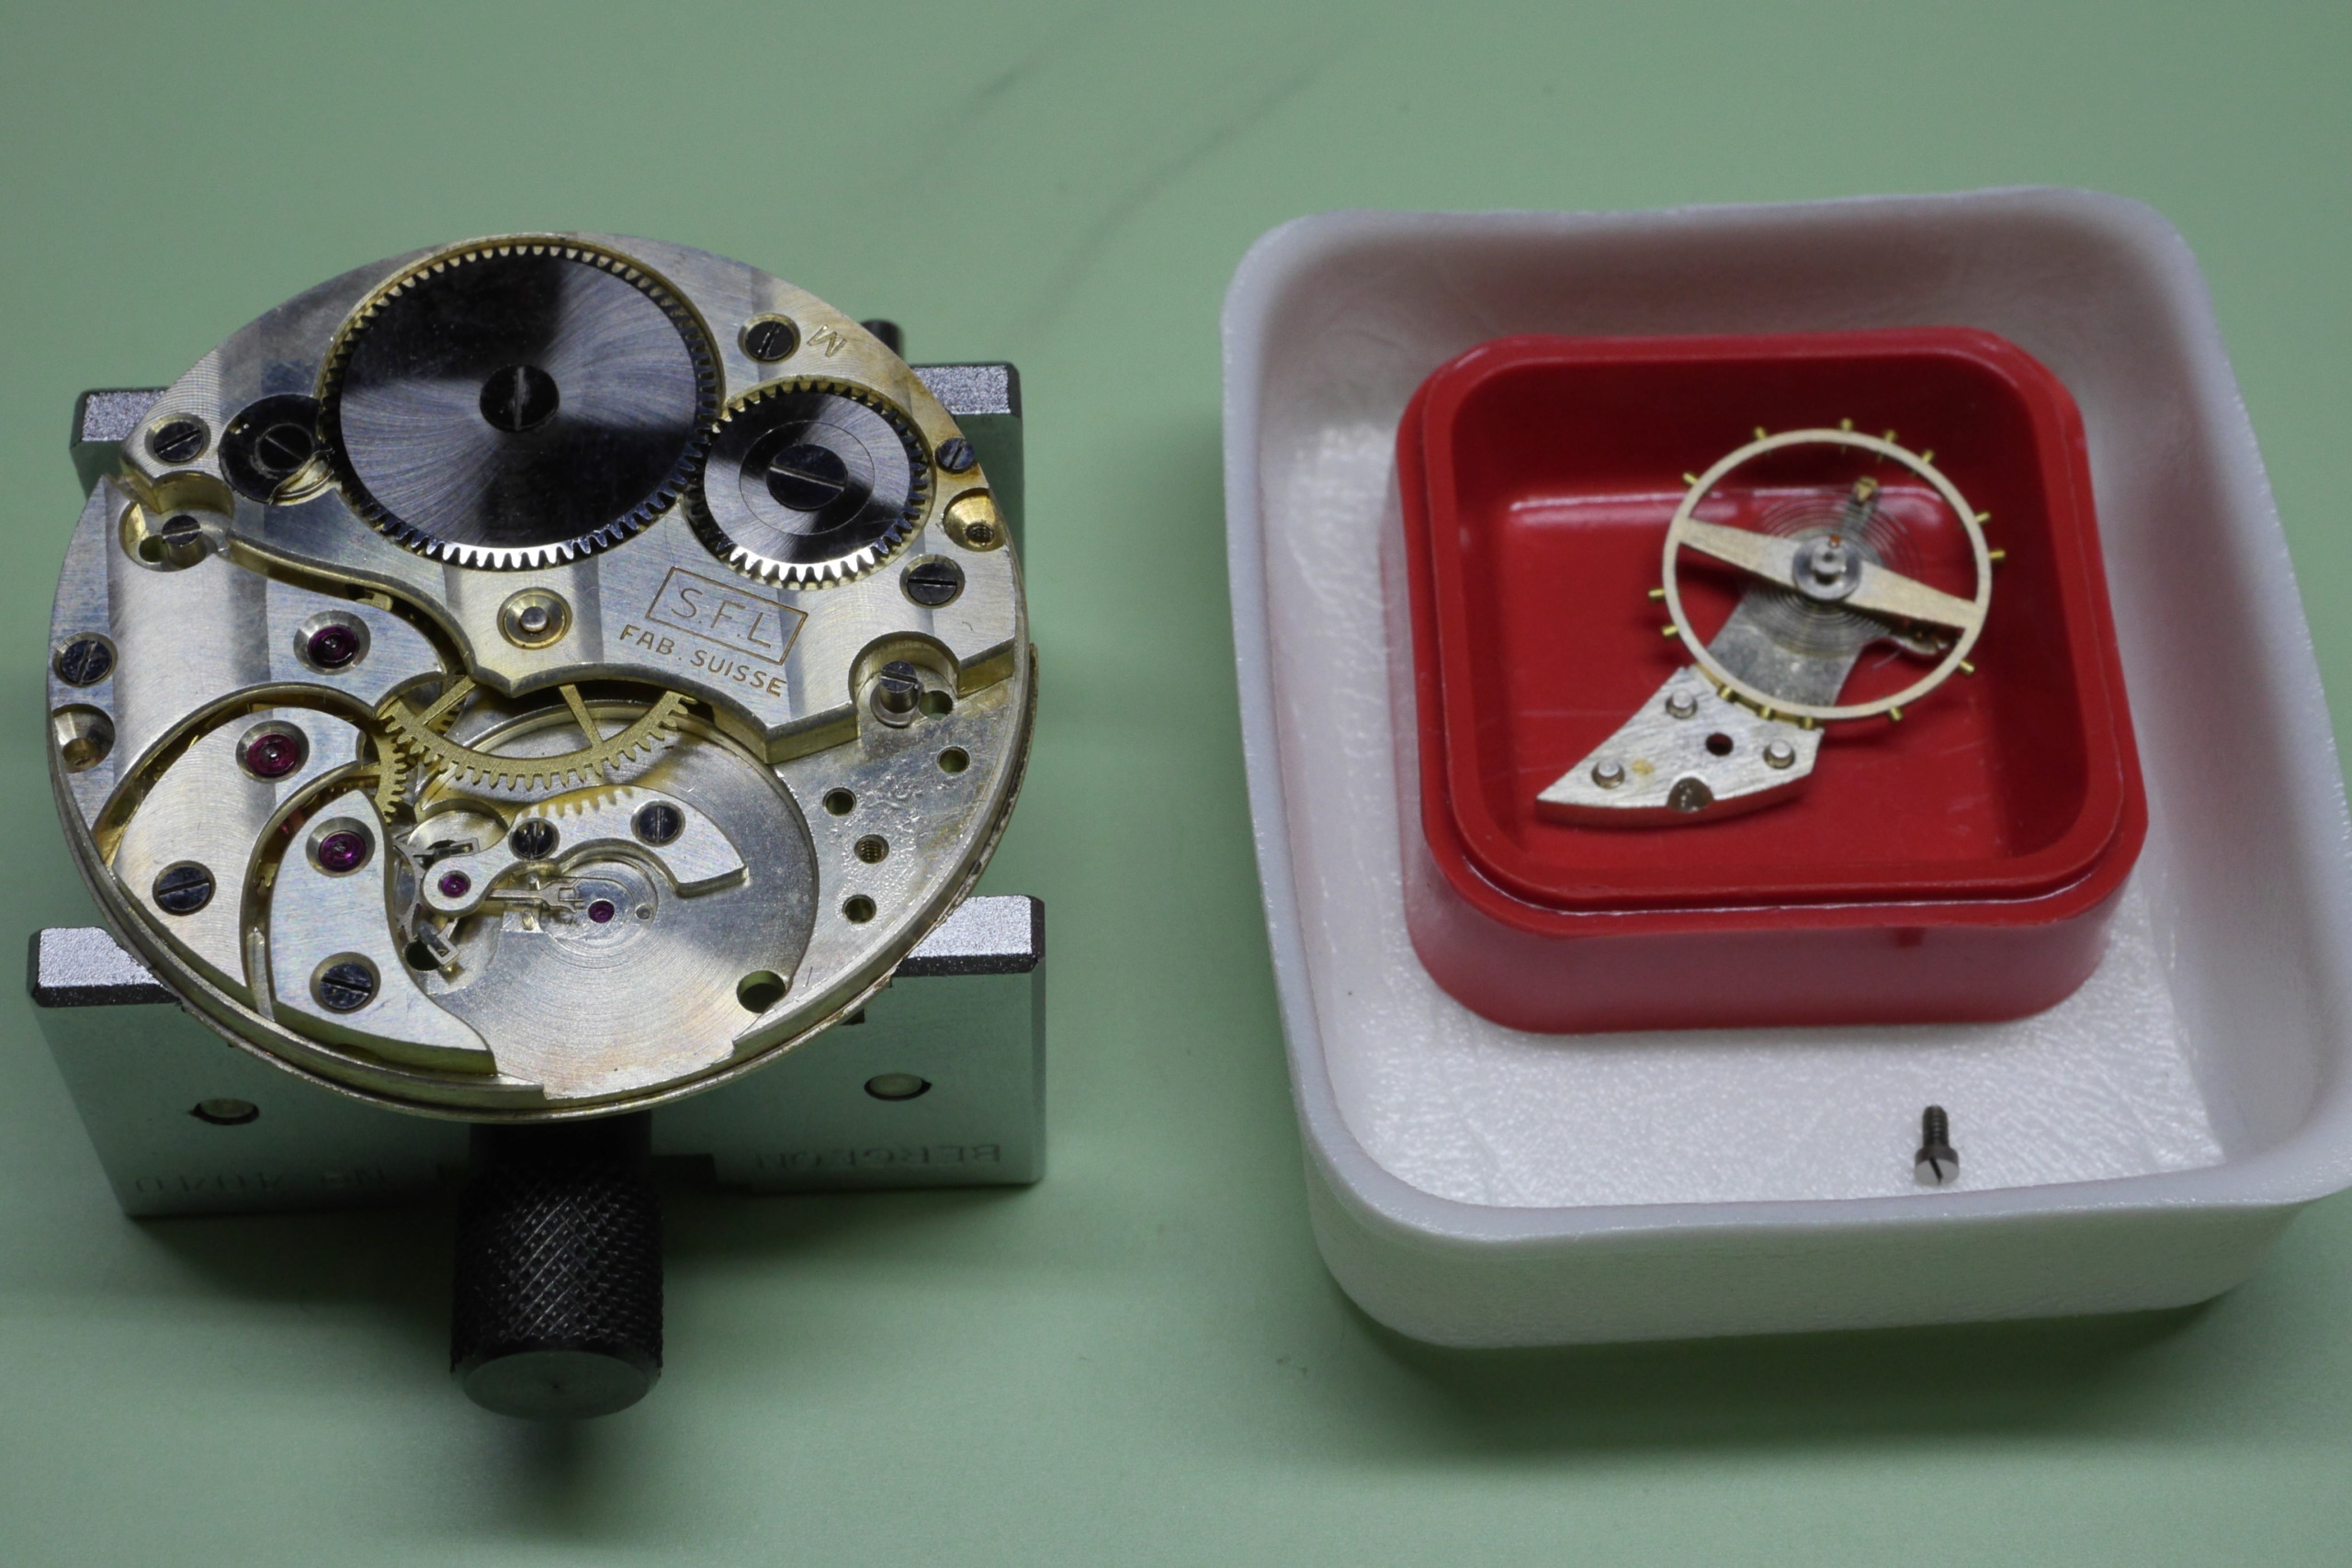 longines - Réparation et entretien d'une montre de poche S.F.L (société française longines) 3610